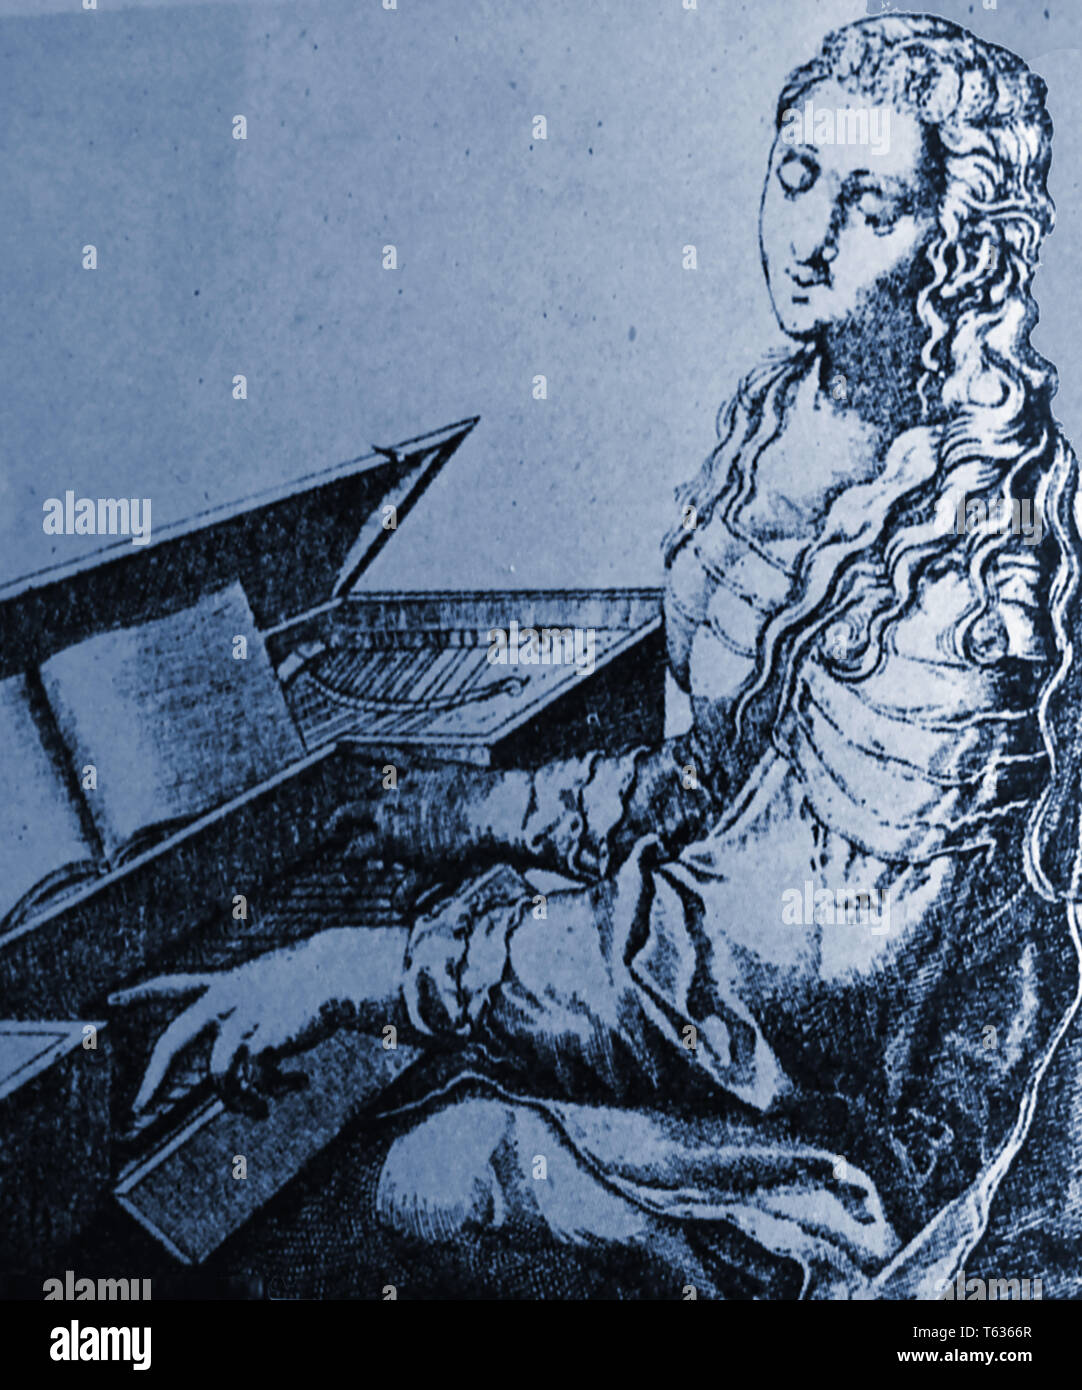 Musik - Eine historische Abbildungen zeigen eine langhaarige Frau spielen aus dem 17. Jahrhundert Spinett (Cembalo) Stockfoto